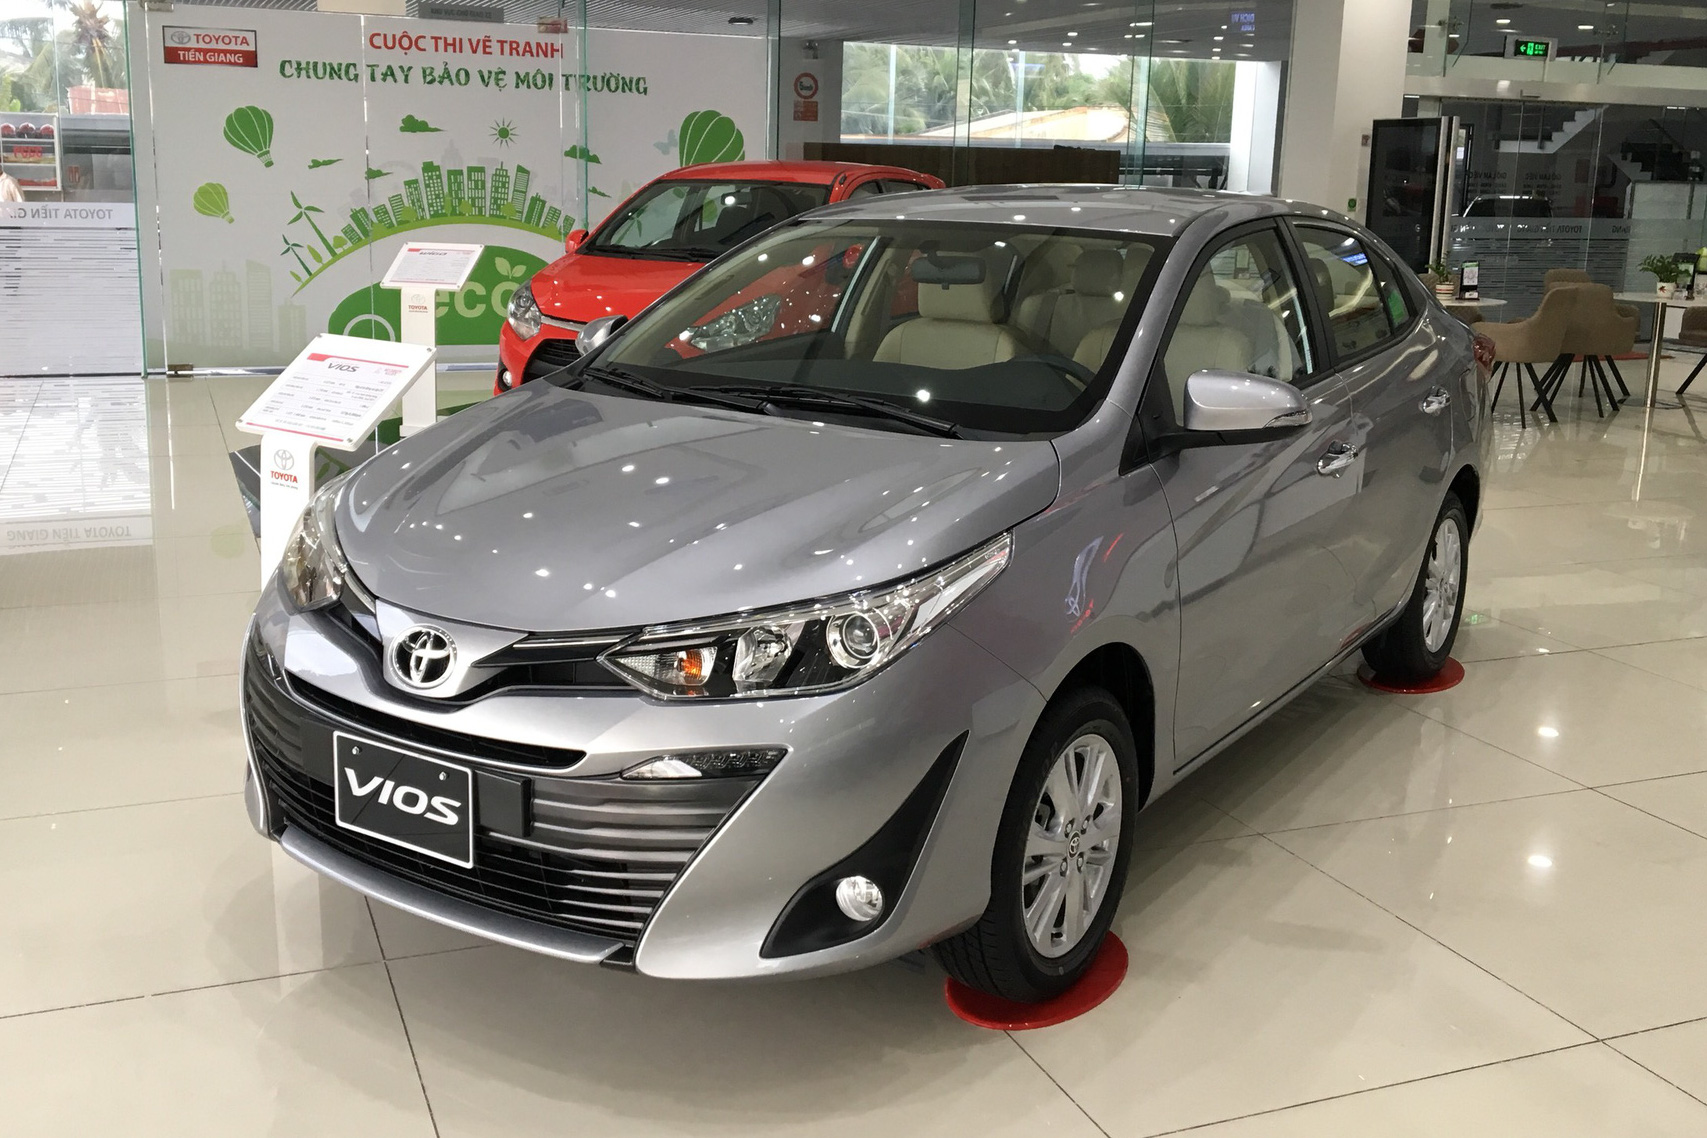 Giá xe Toyota Vios 2020 giảm mạnh, cơ hội mua xe giá rẻ cho người dân